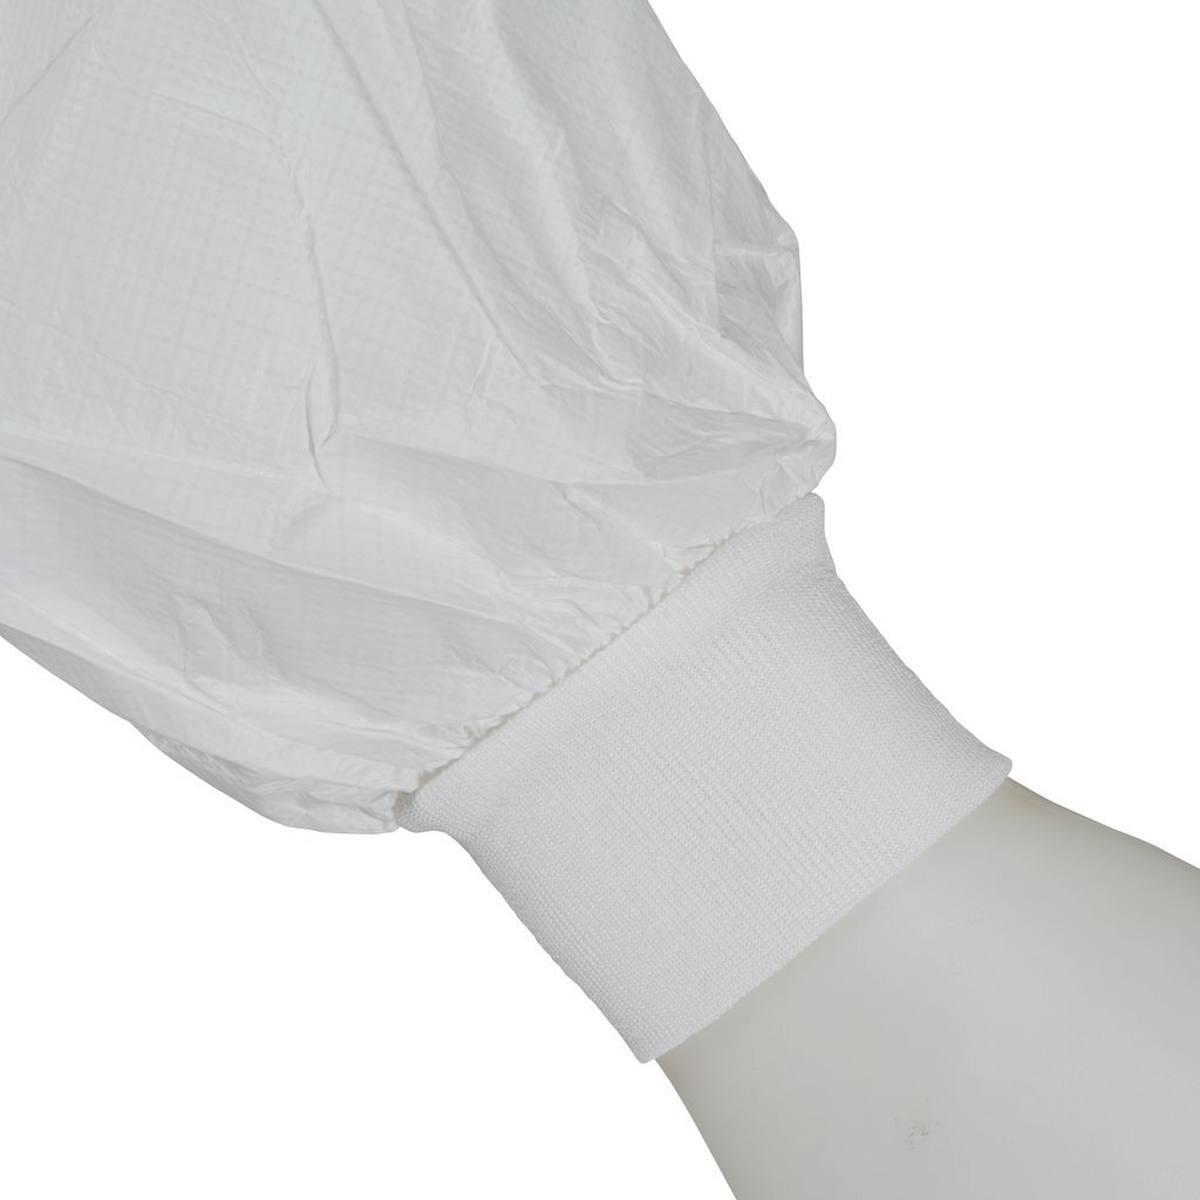 cappotto 3M 4440, bianco, taglia 3XL, particolarmente traspirante, molto leggero, con zip, polsini in maglia